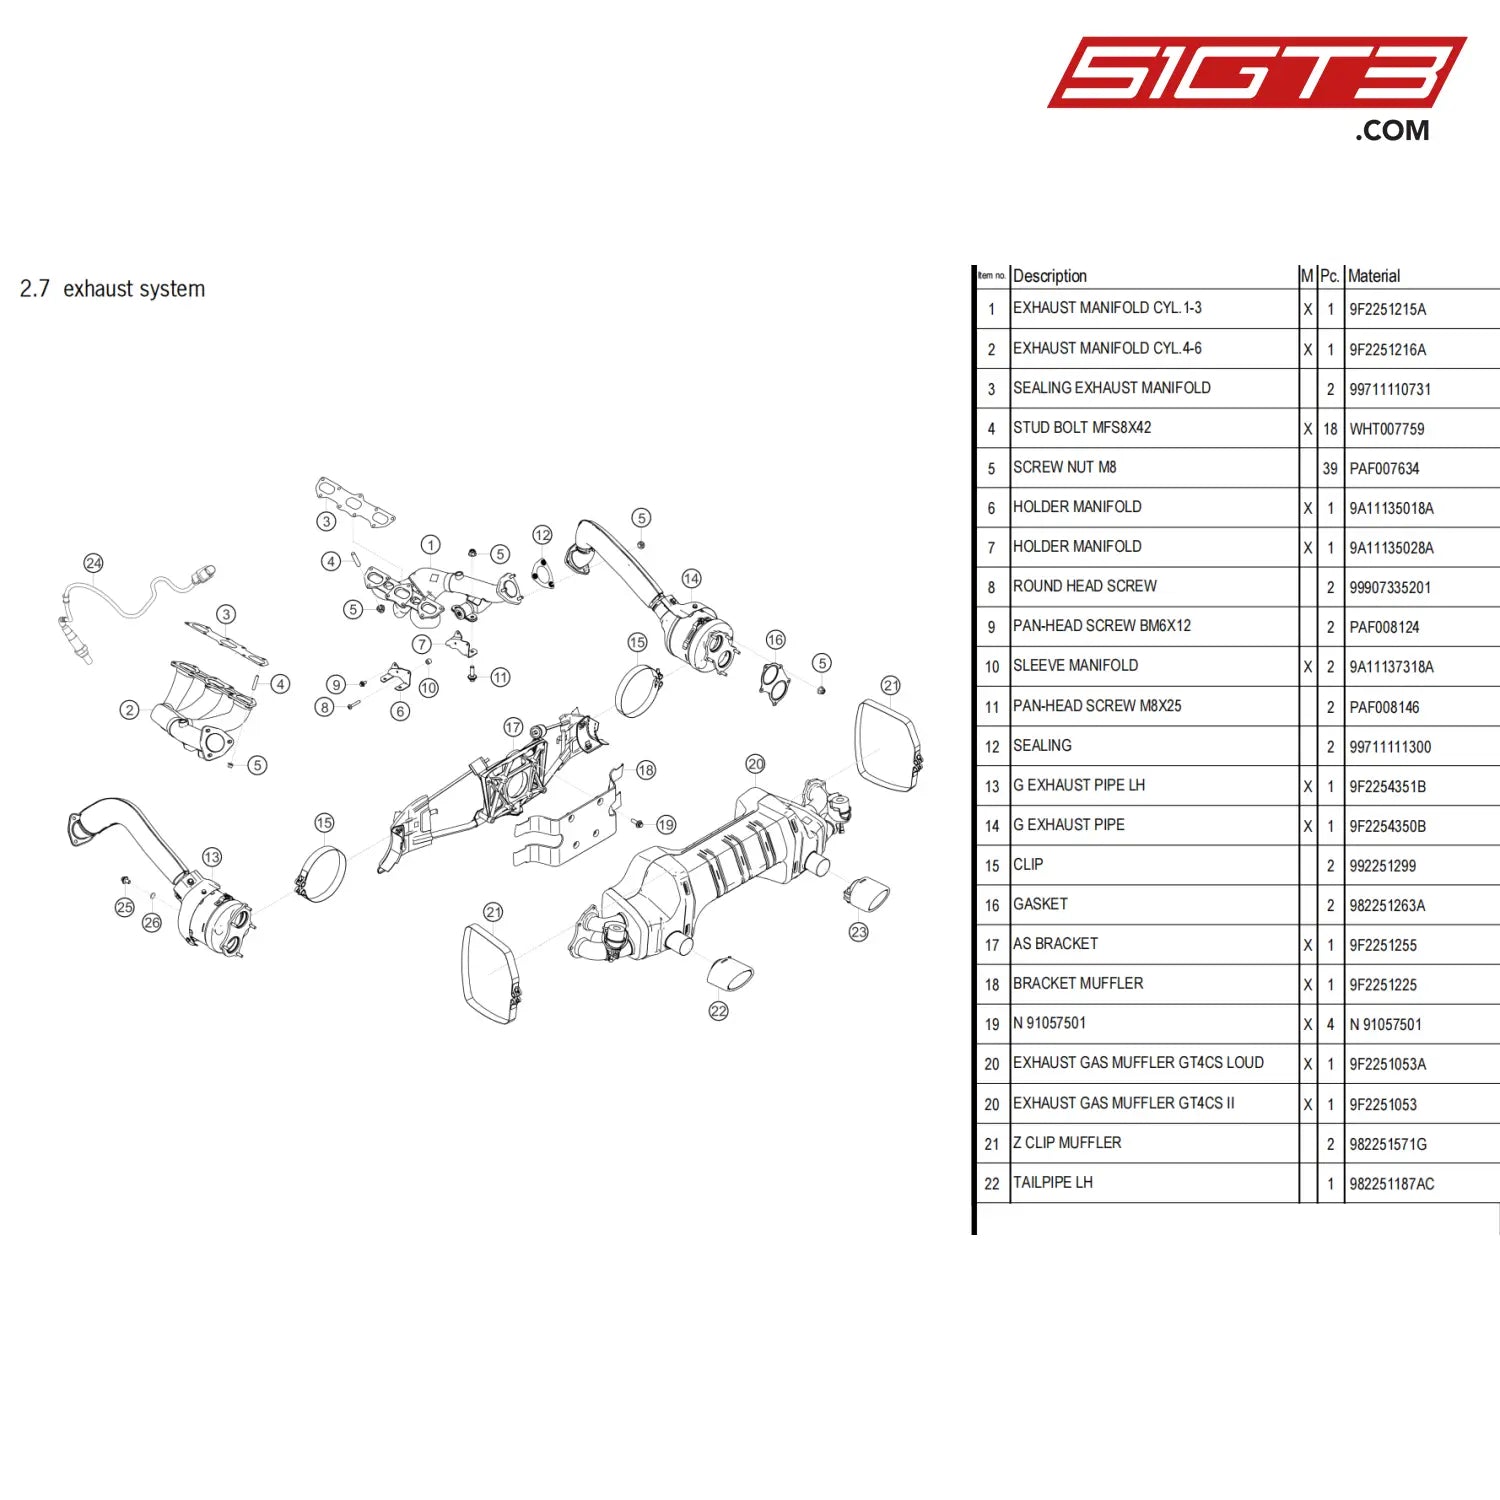 Holder Manifold - 9A11135018A [Porsche 718 Cayman Gt4 Clubsport] Exhaust System